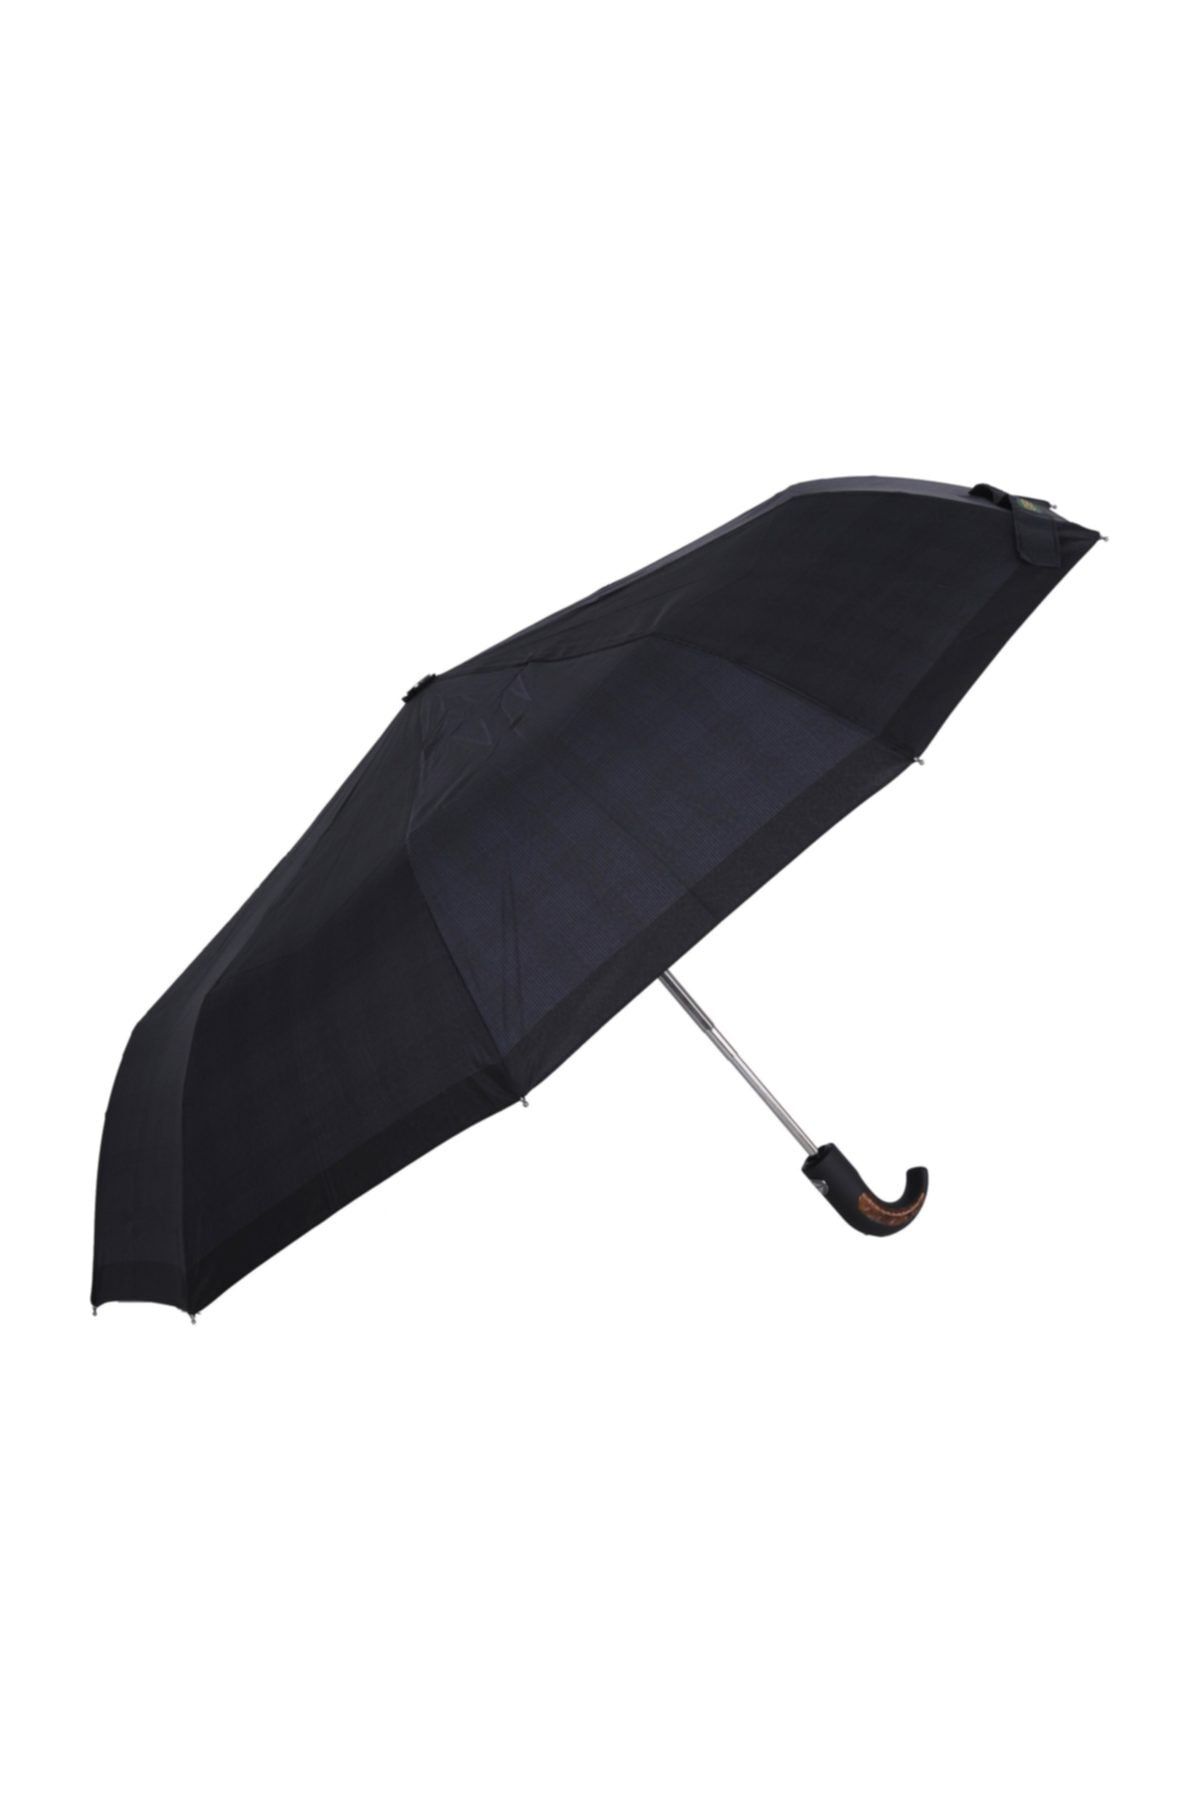 APRİL Erkek Şemsiye Tam Otomatik Baston Saplı Desenli Siyah 226g